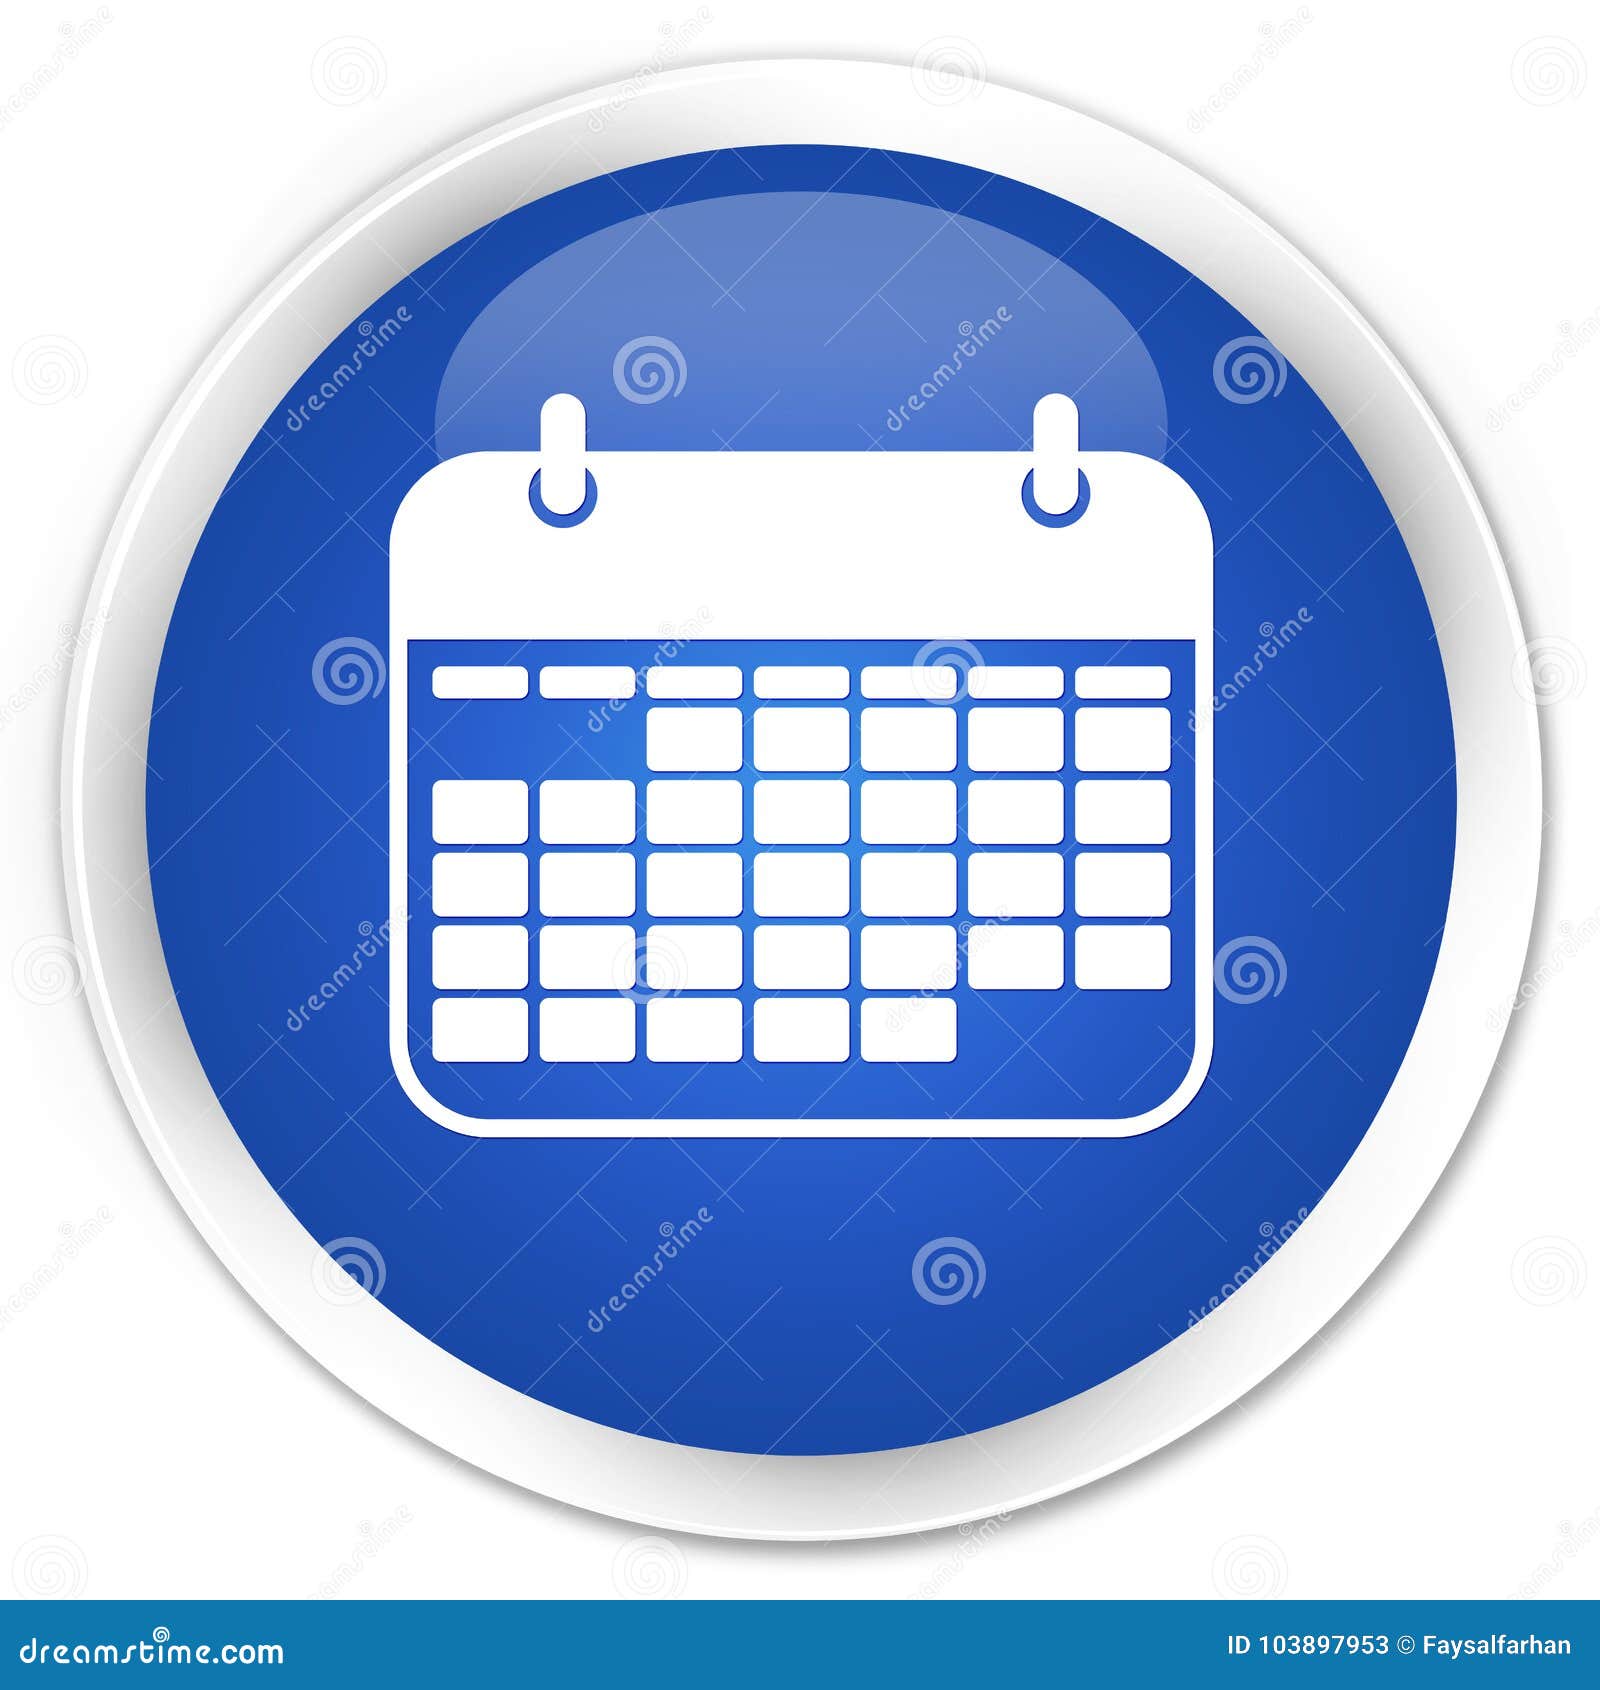 calendar icon button round premium bottone icona rotondo premio calendario blu dell